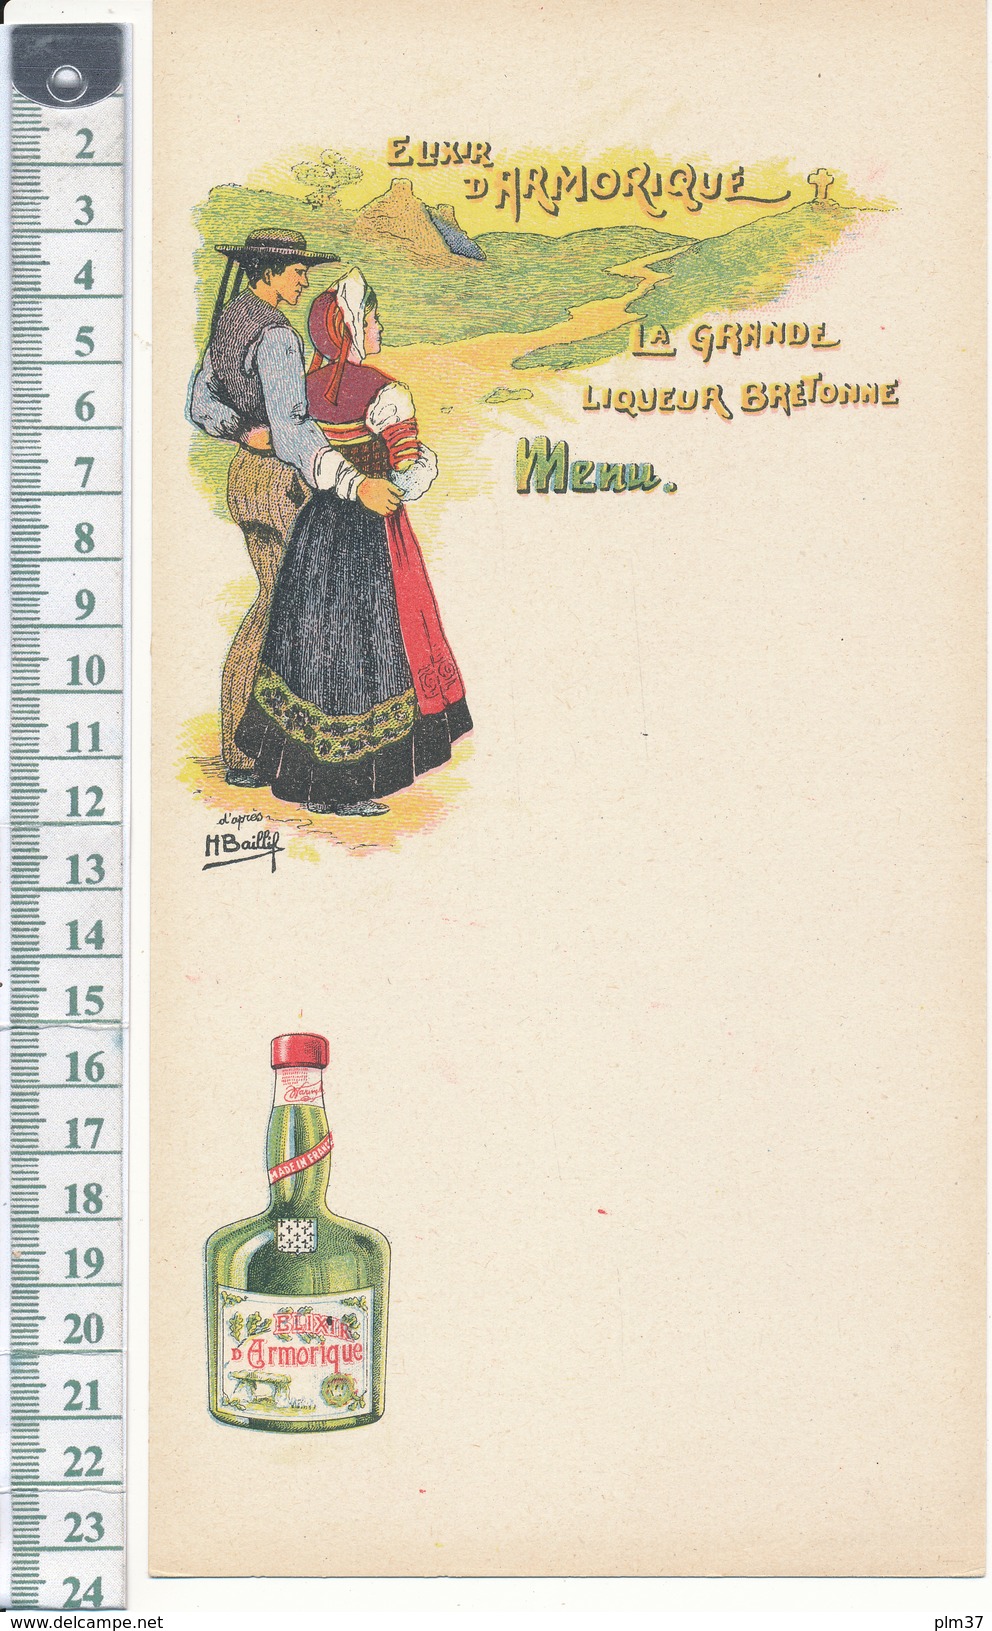 MENU Vierge - Elixir D'Armorique, La Grande Liqueur Bretonne - Illustration H. Baillif - Menus